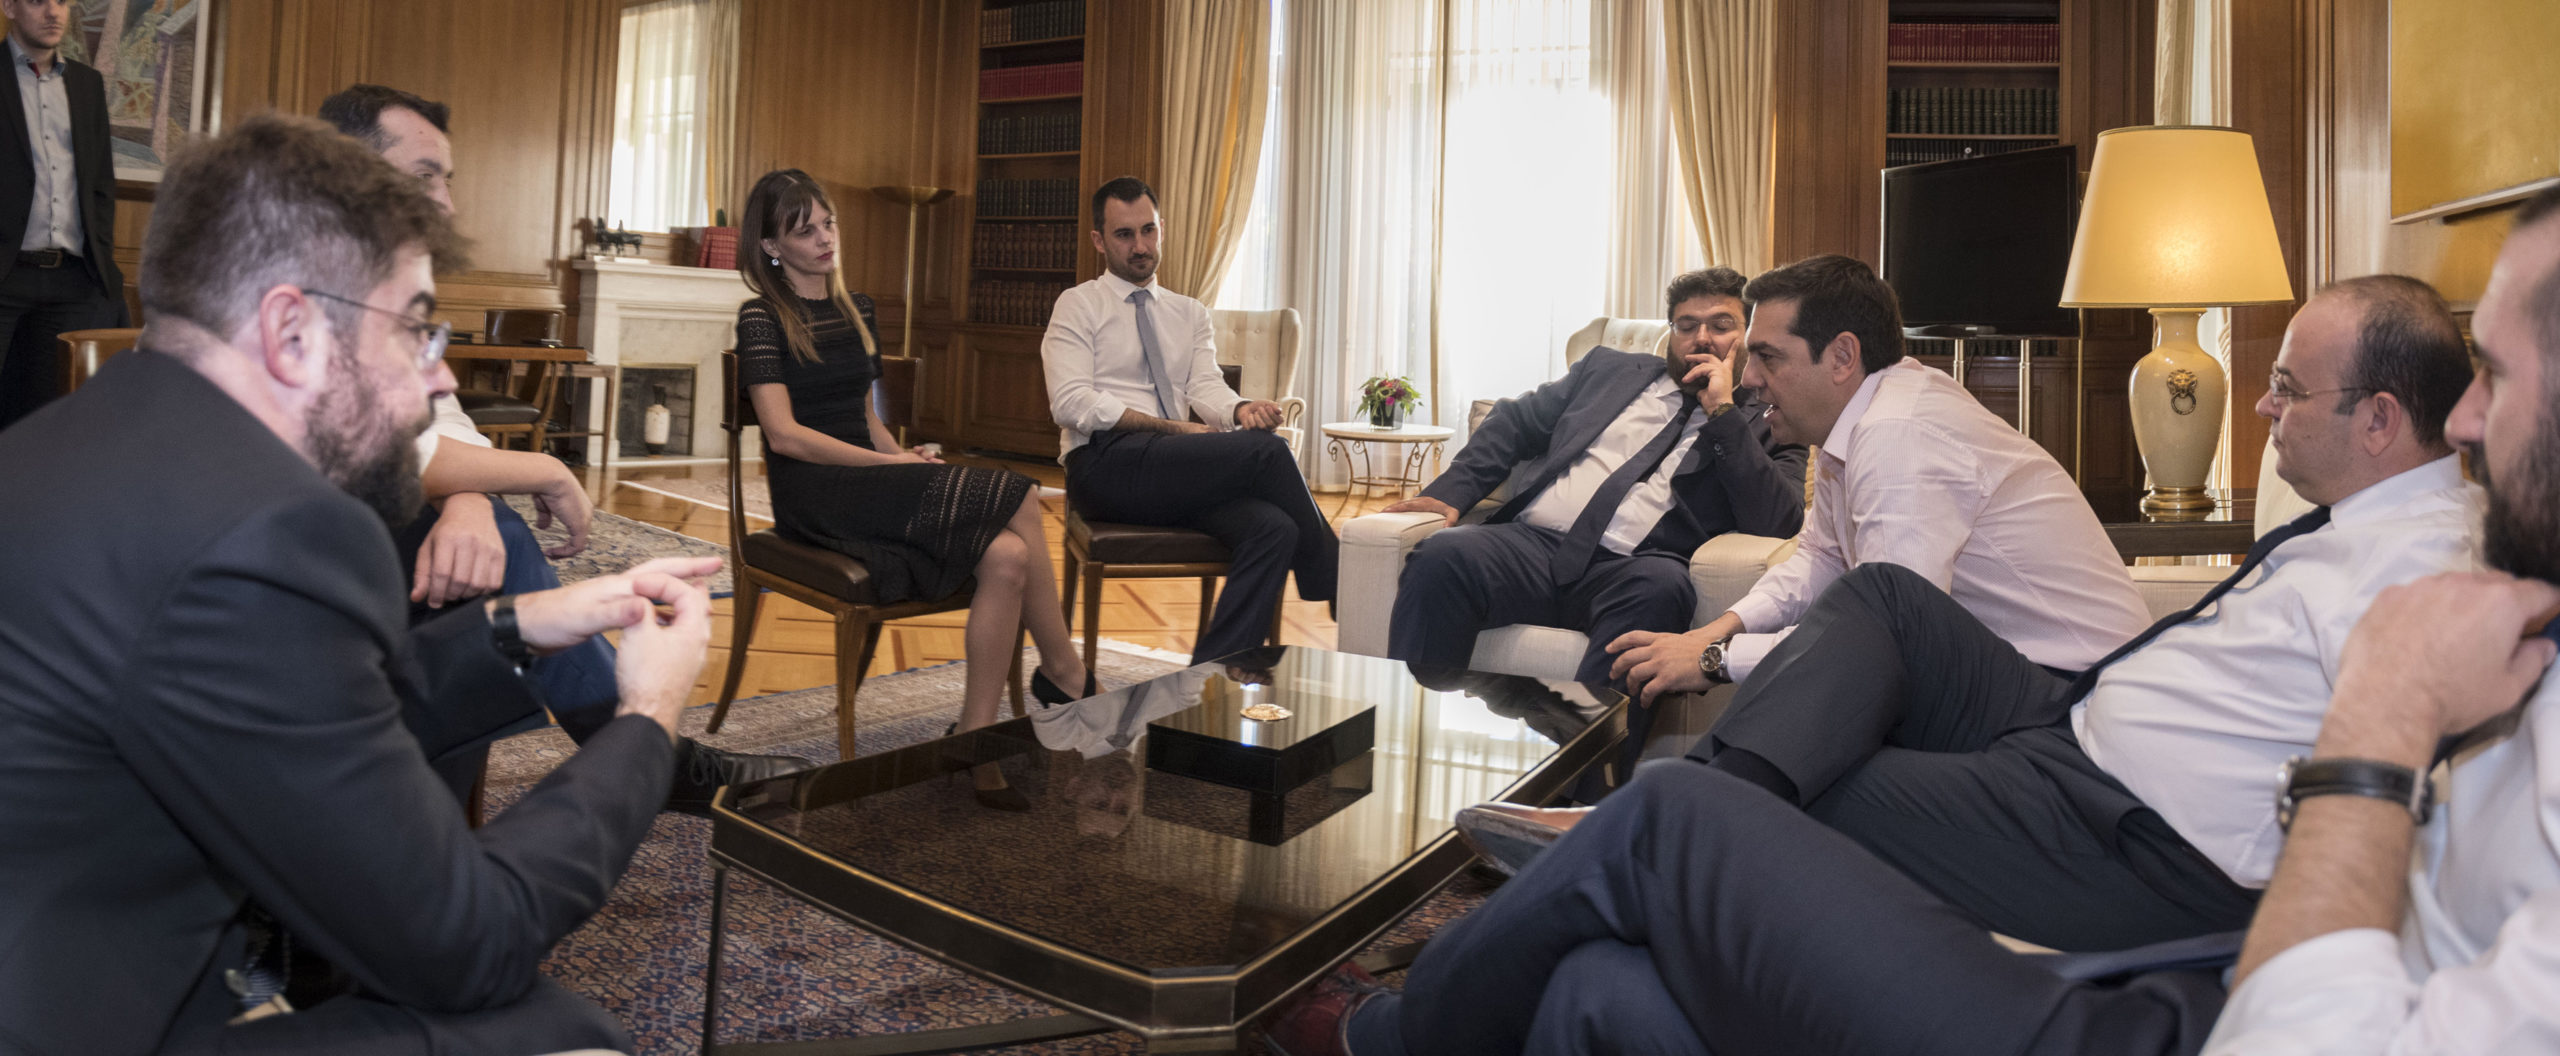 Συνάντηση του Τσίπρα με τα νεότερα σε ηλικία μέλη της κυβέρνησης – ΦΩΤΟ